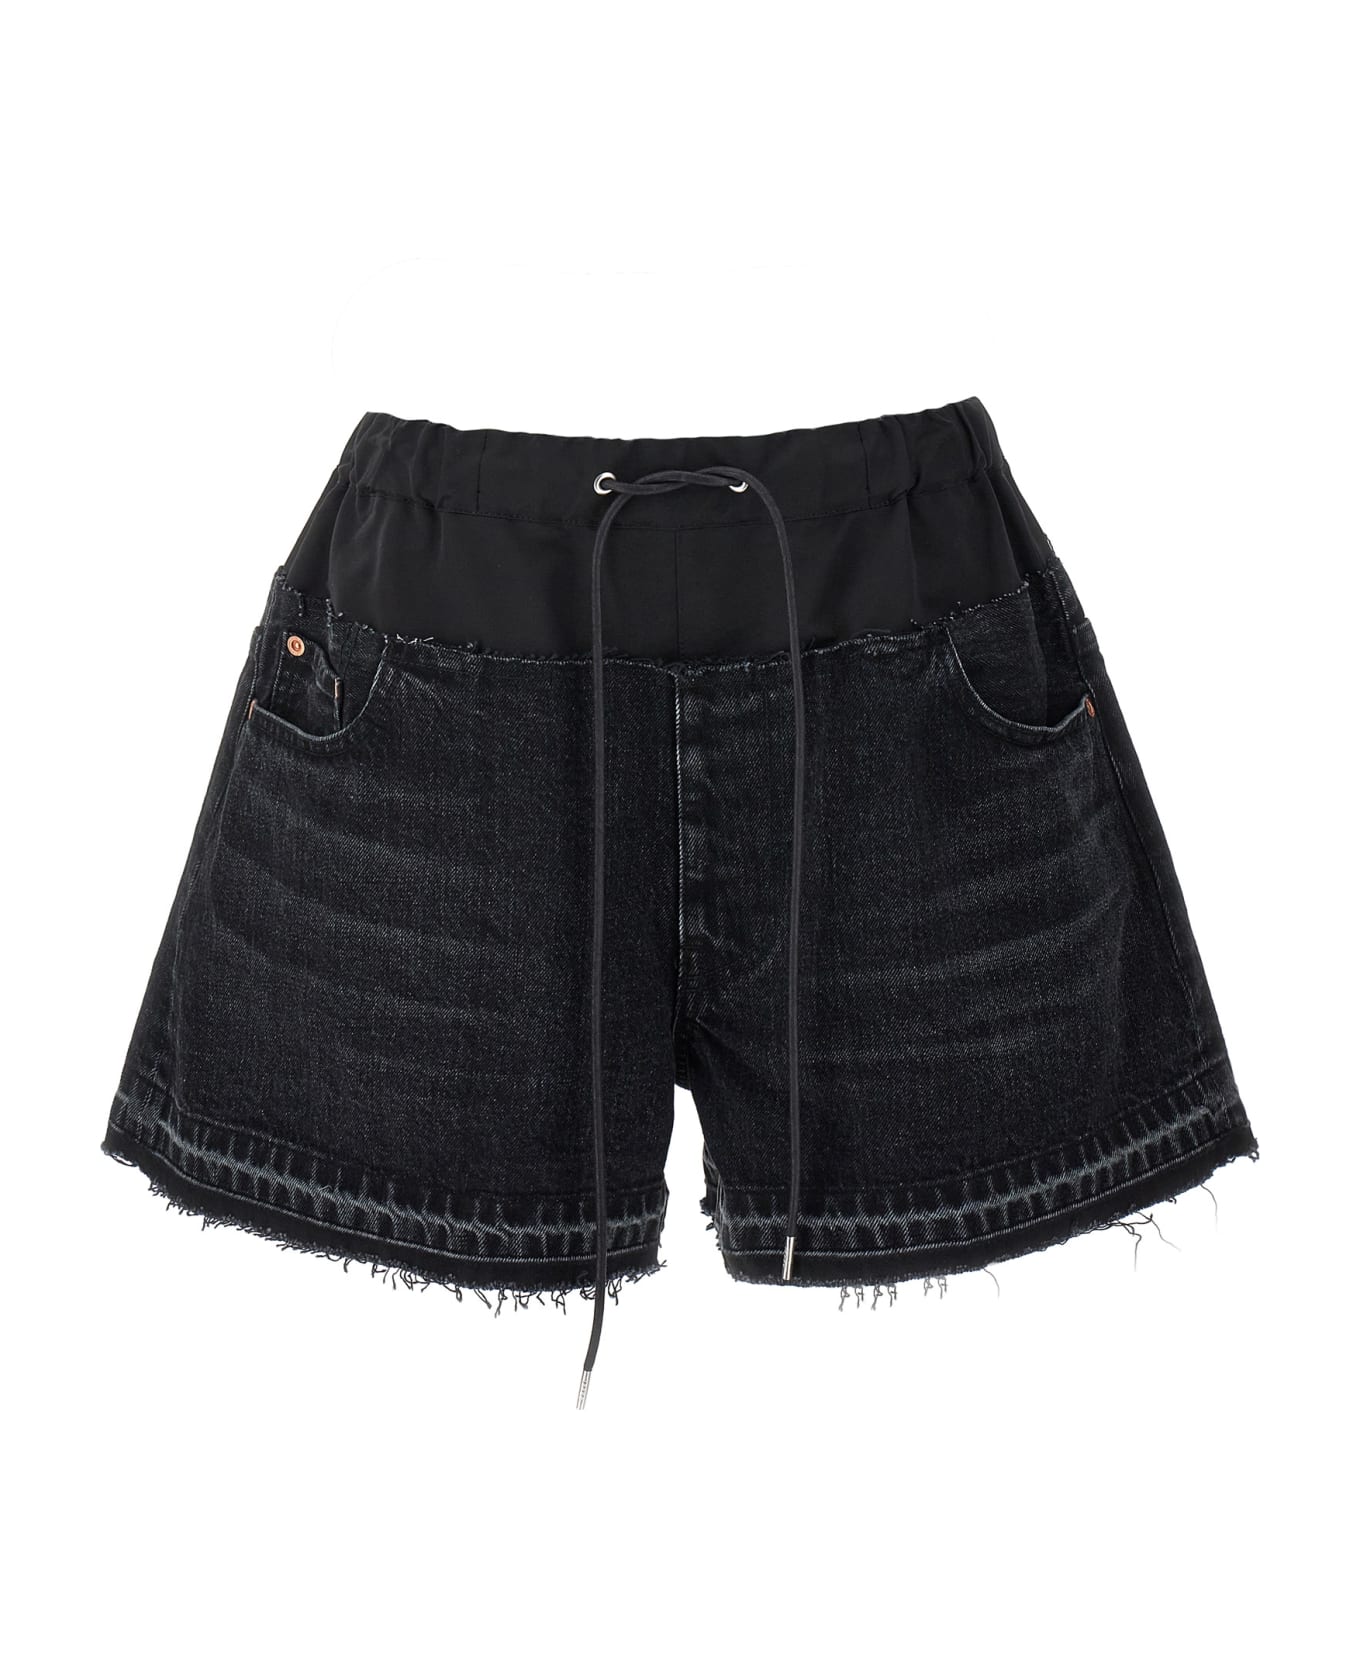 Sacai Denim Shorts - Black   ショートパンツ